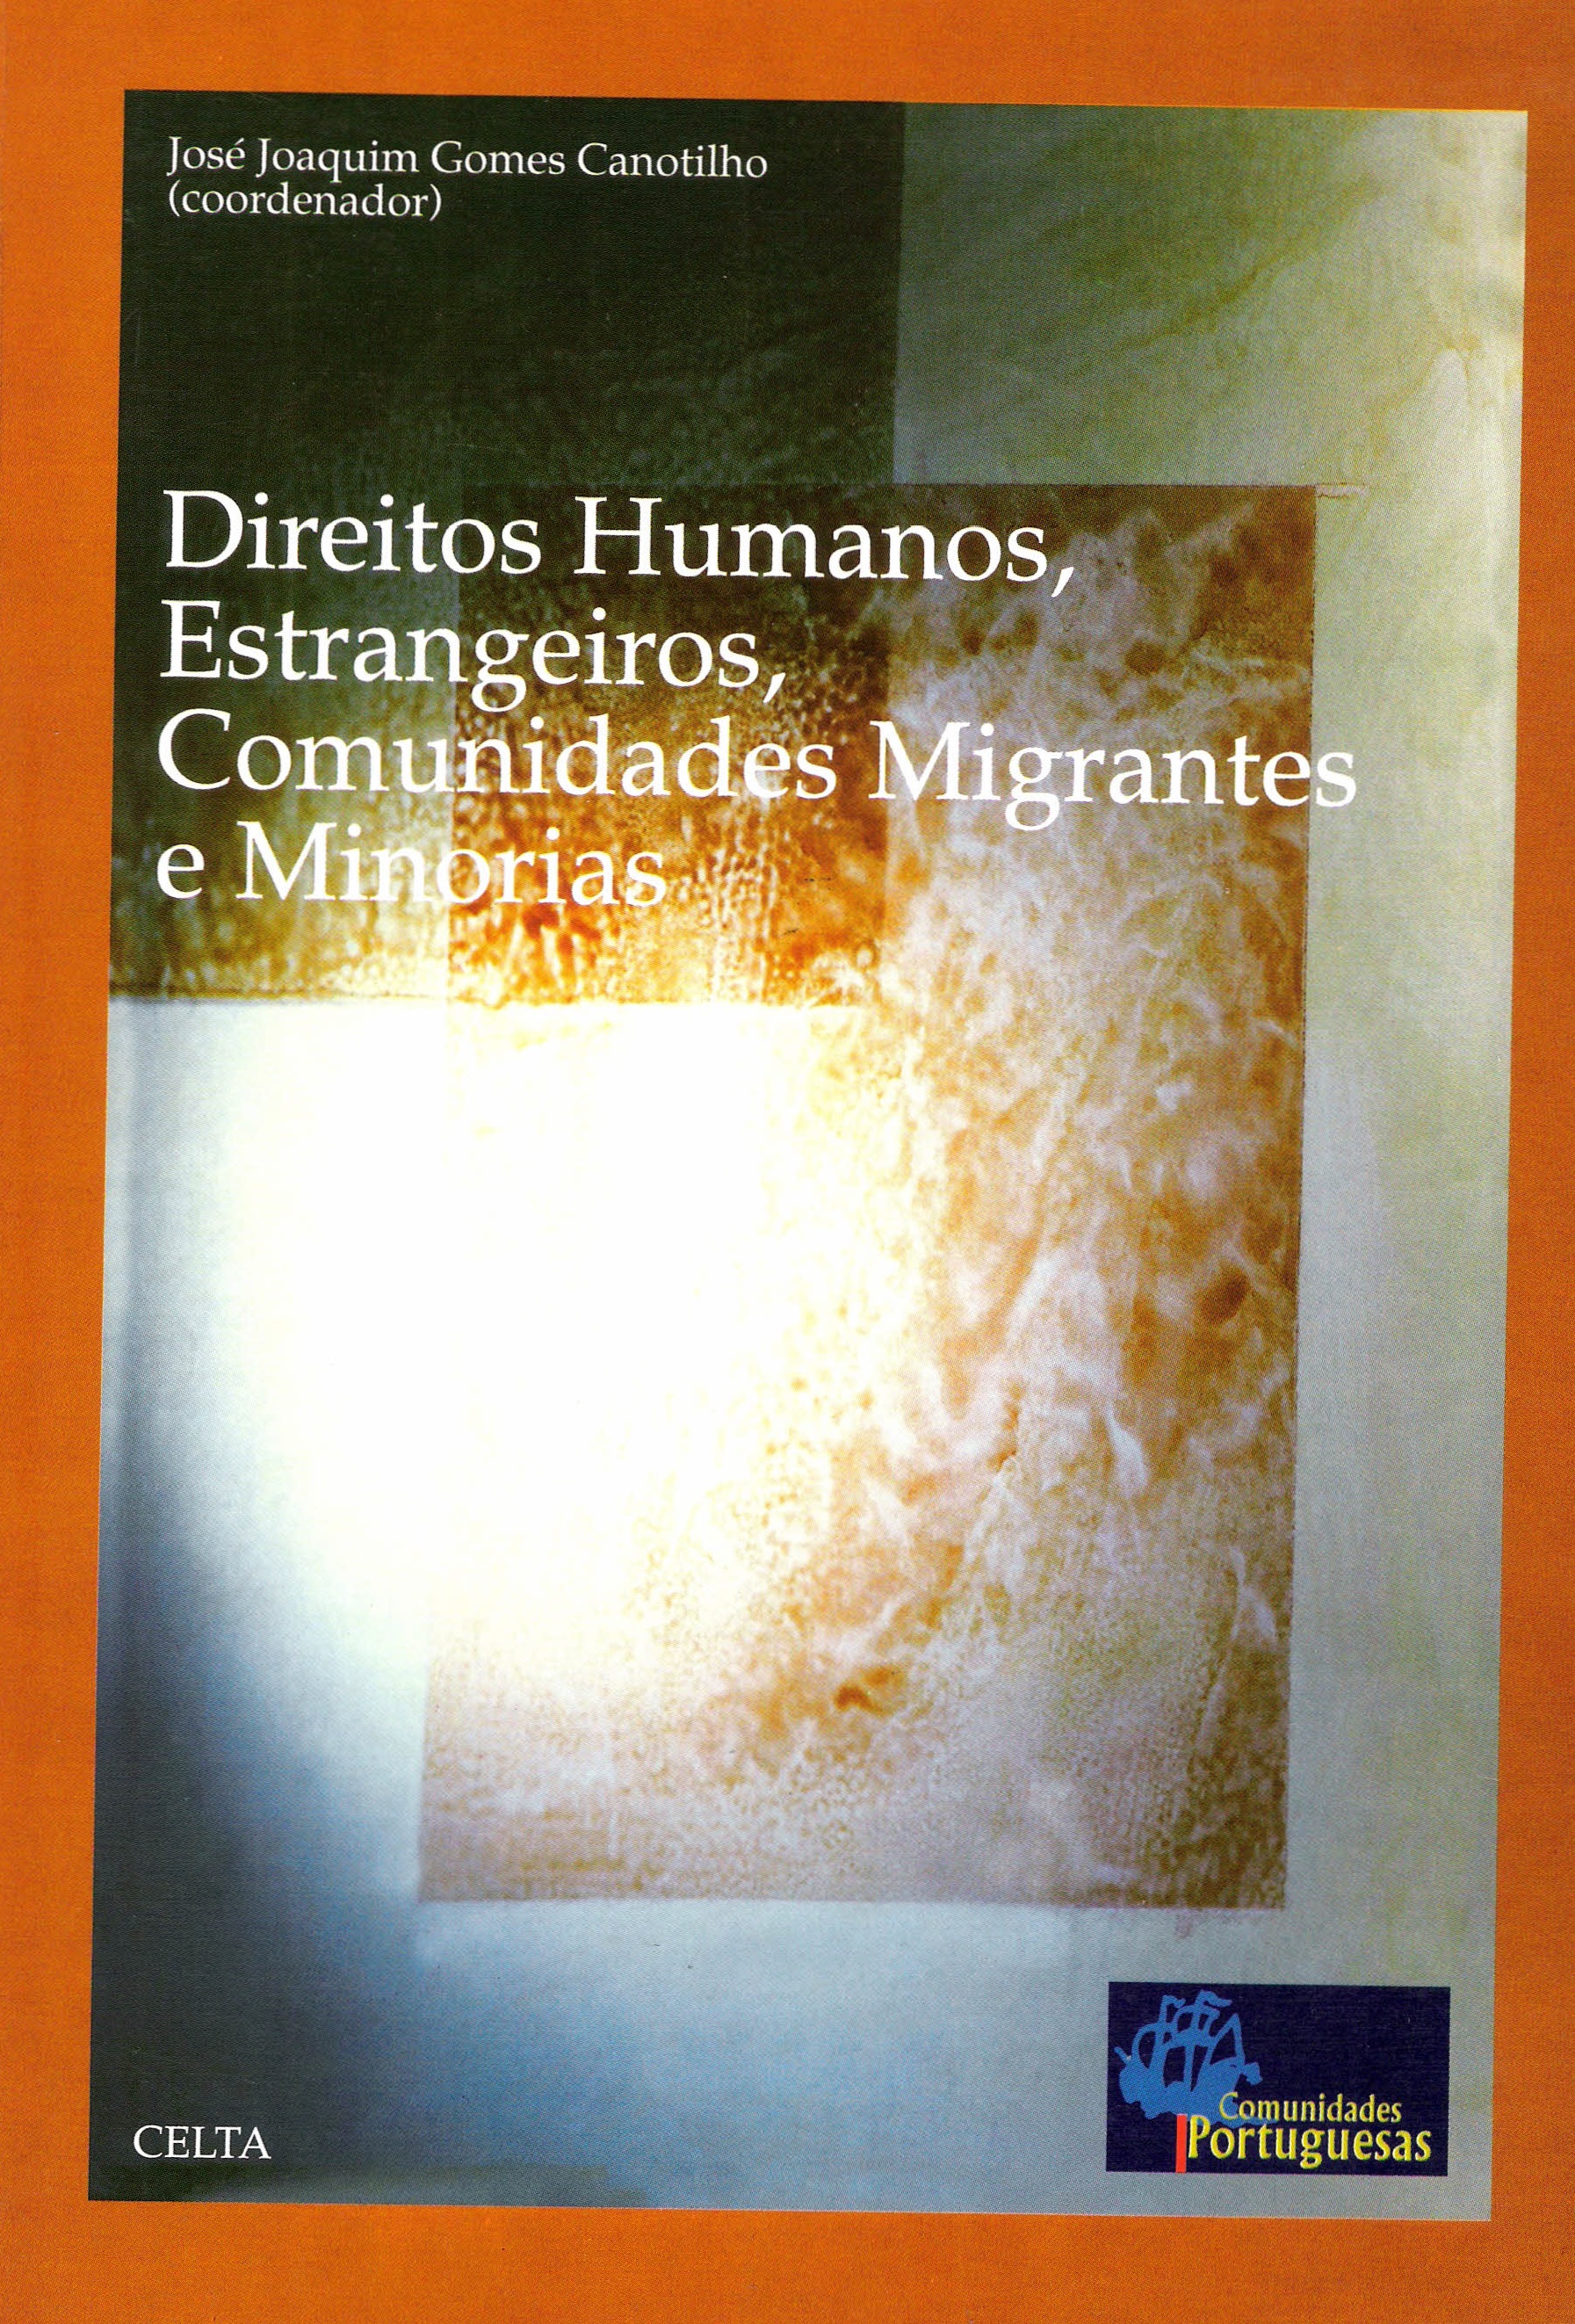 Direitos Humanos, Estrangeiros, Comunidades Migrantes e Minorias (2000)